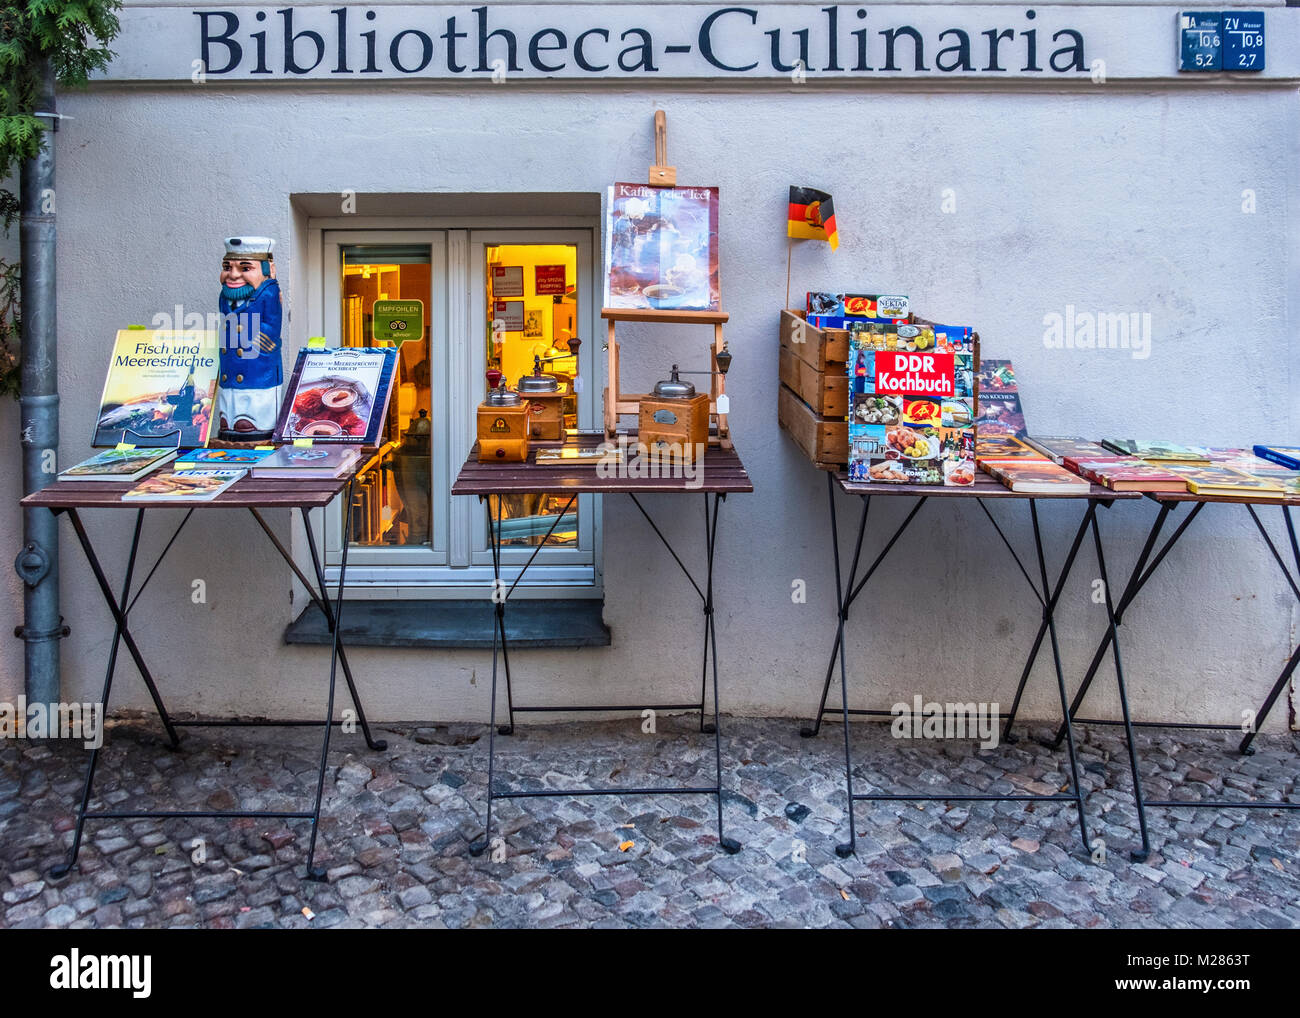 Kochbuch Antiquariat Bibliotheca-Culinaria, Shop vende antiquario,vintage & di seconda mano libri di cucina e utensili da cucina,Mitte,Berlin Foto Stock